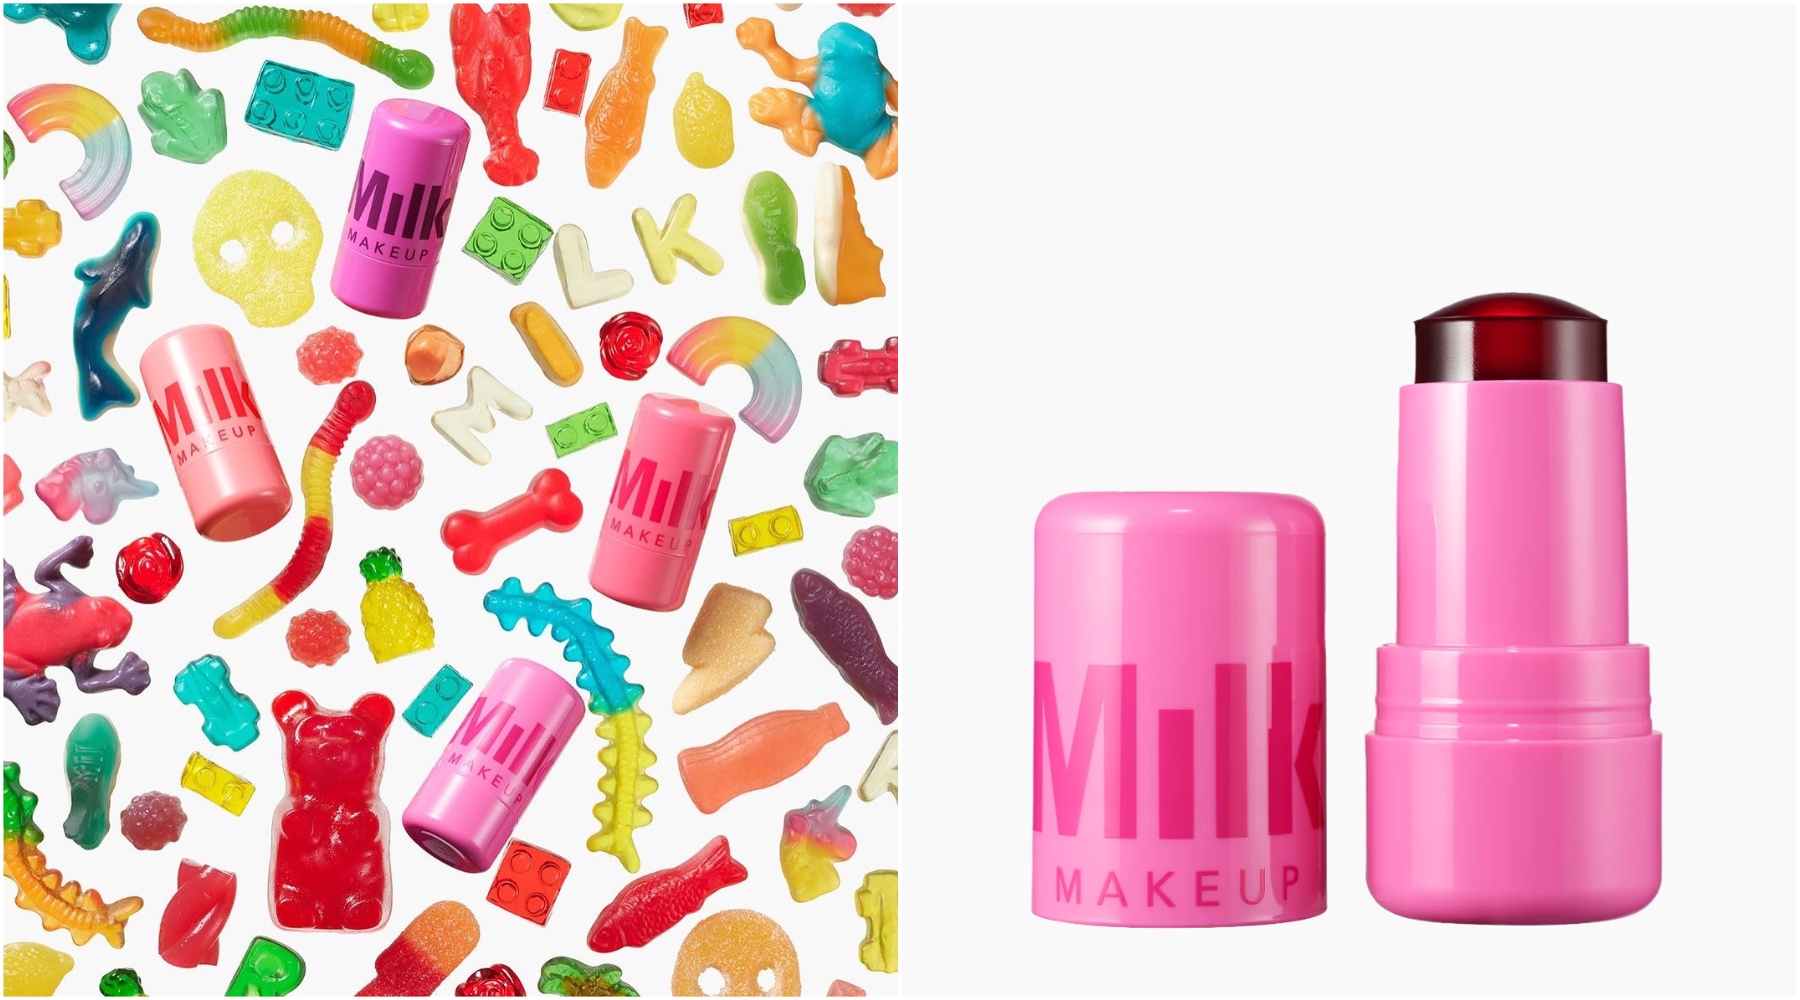 Milk Makeup predstavio je nove Water Jelly Tint proizvode, i ceo TikTok želi da ih pojede